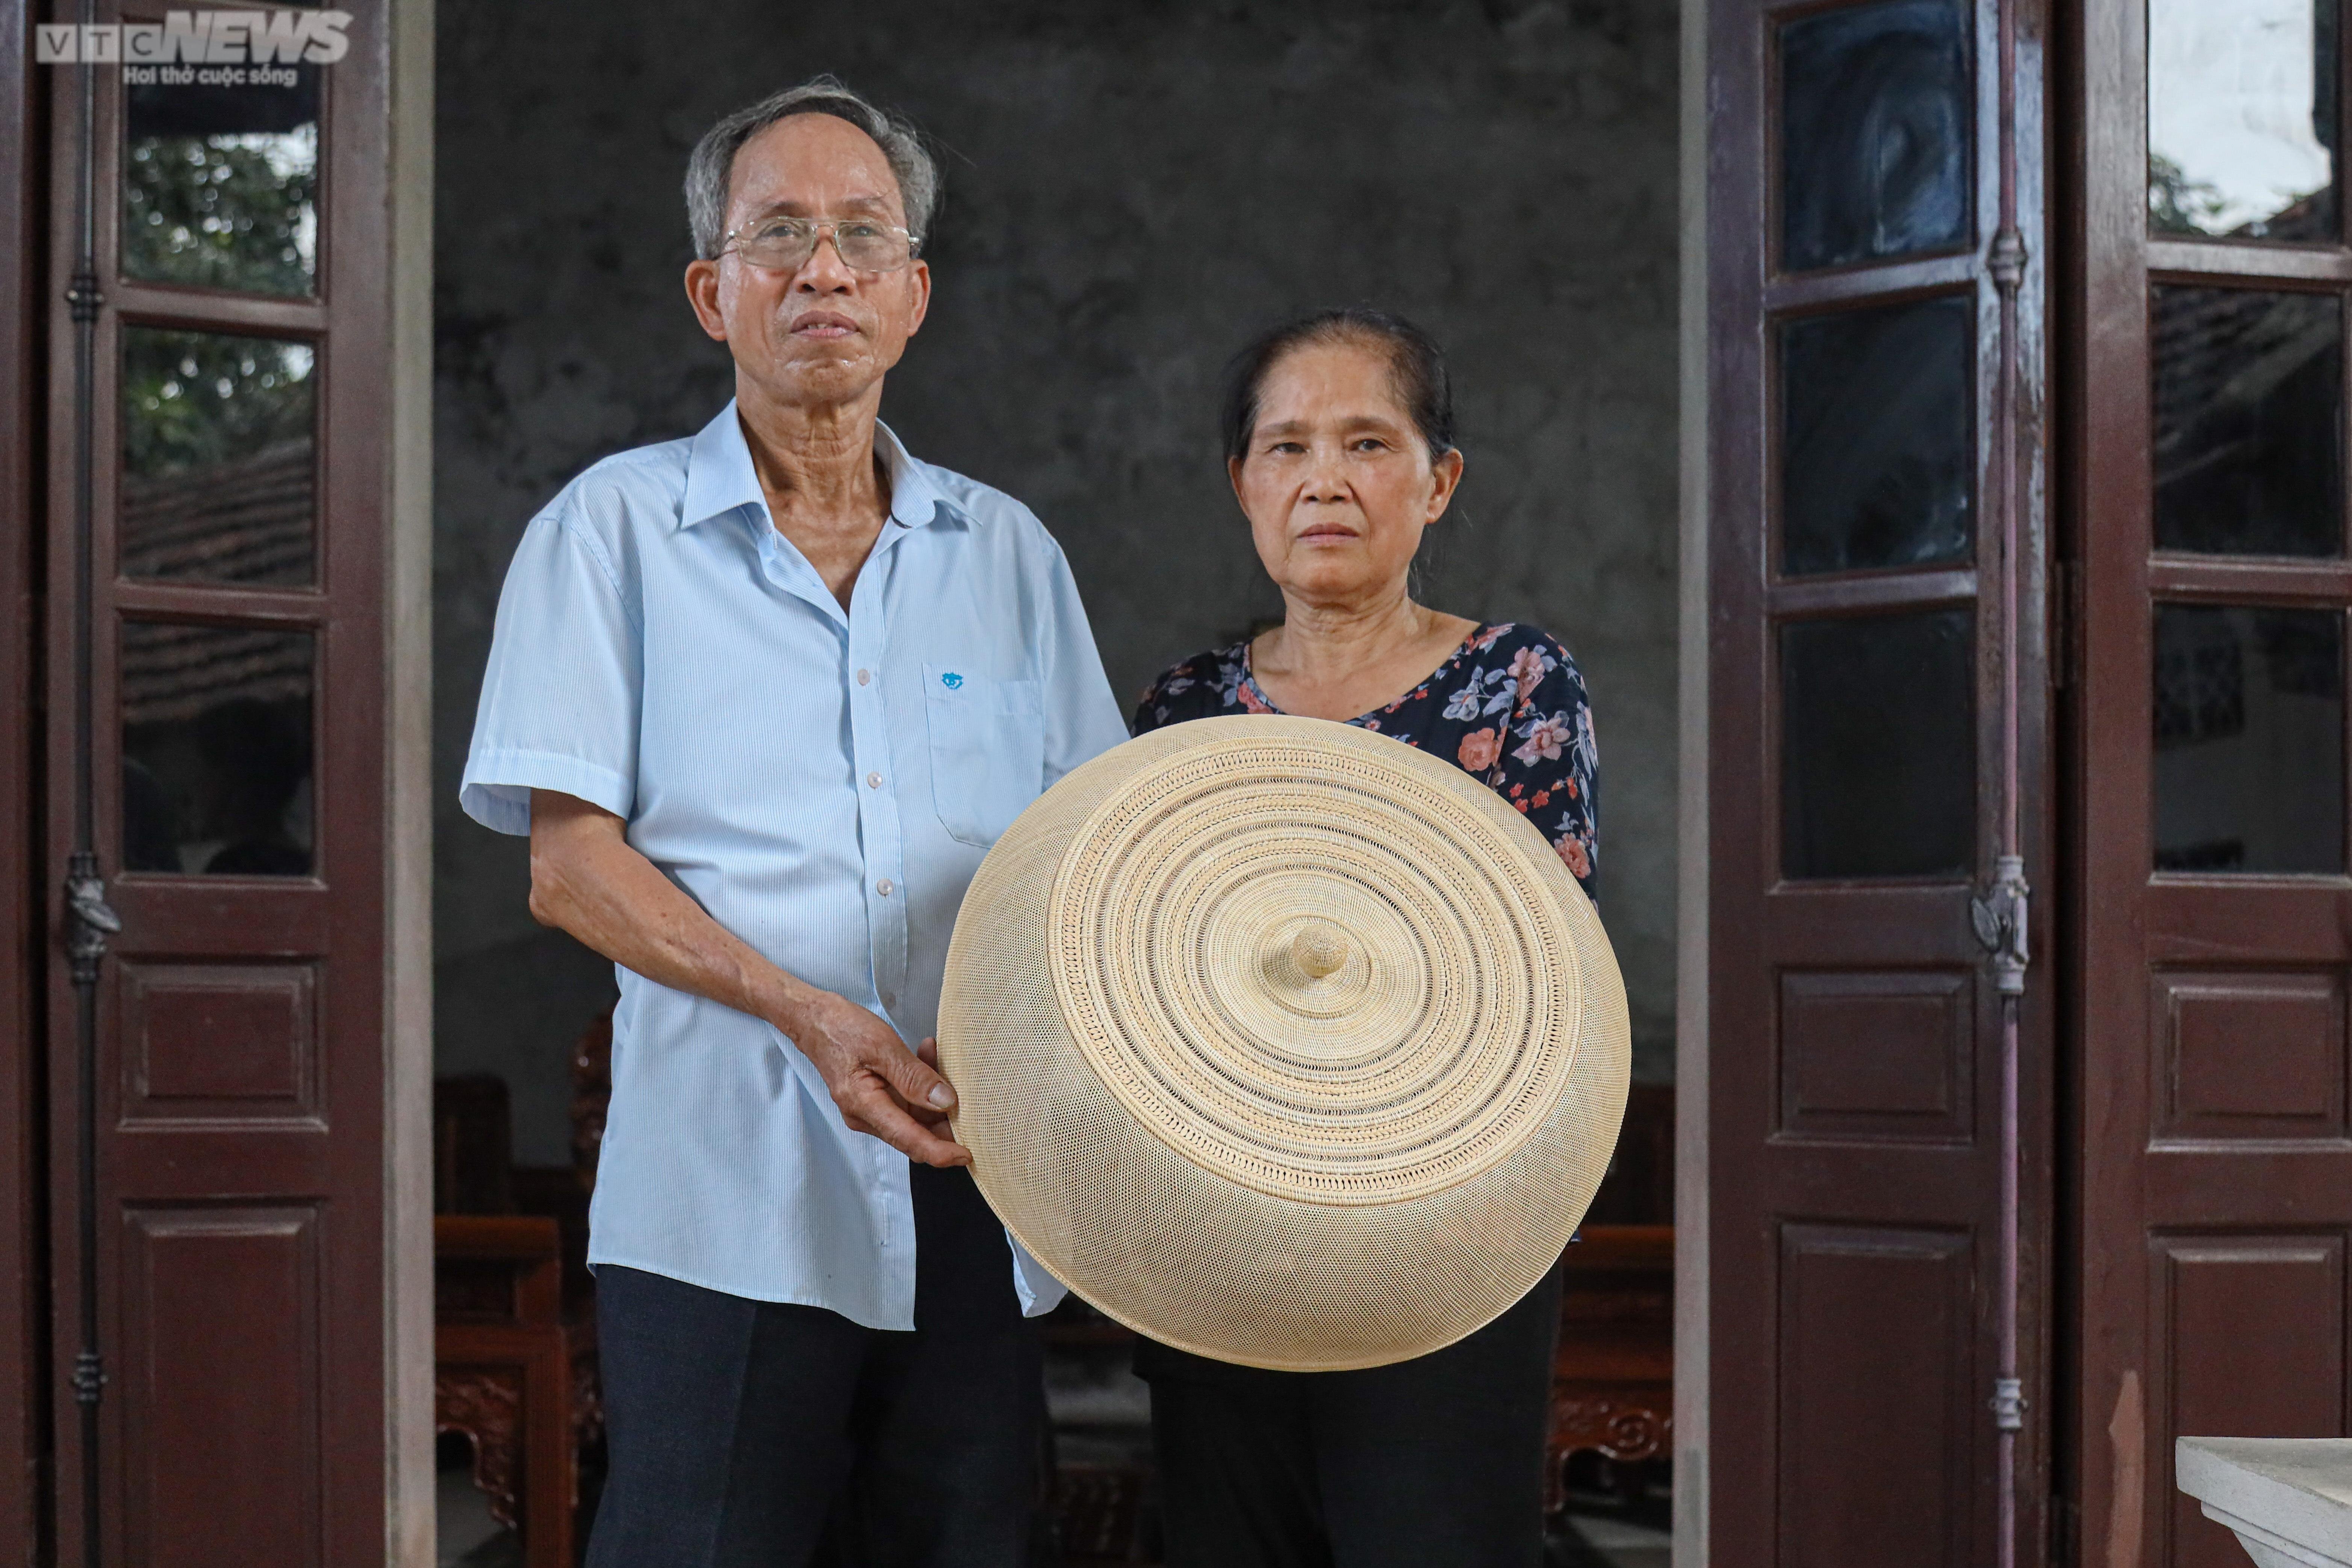 Làng Phú Vinh (huyện Chương Mỹ, Hà Nội) từ xưa đã nổi tiếng với nghề mây tre đan truyền thống có lịch sử hơn 400 năm. Trong số rất nhiều sản phẩm, đặc biệt nhất là chiếc lồng bàn “tuyn” của ông Trần Bá Khá (75 tuổi) và vợ là bà Nguyễn Thị Tiến (72 tuổi) được làm từ những sợi mây  dài, mảnh, trắng muốt, mỏng như tờ giấy poluya.